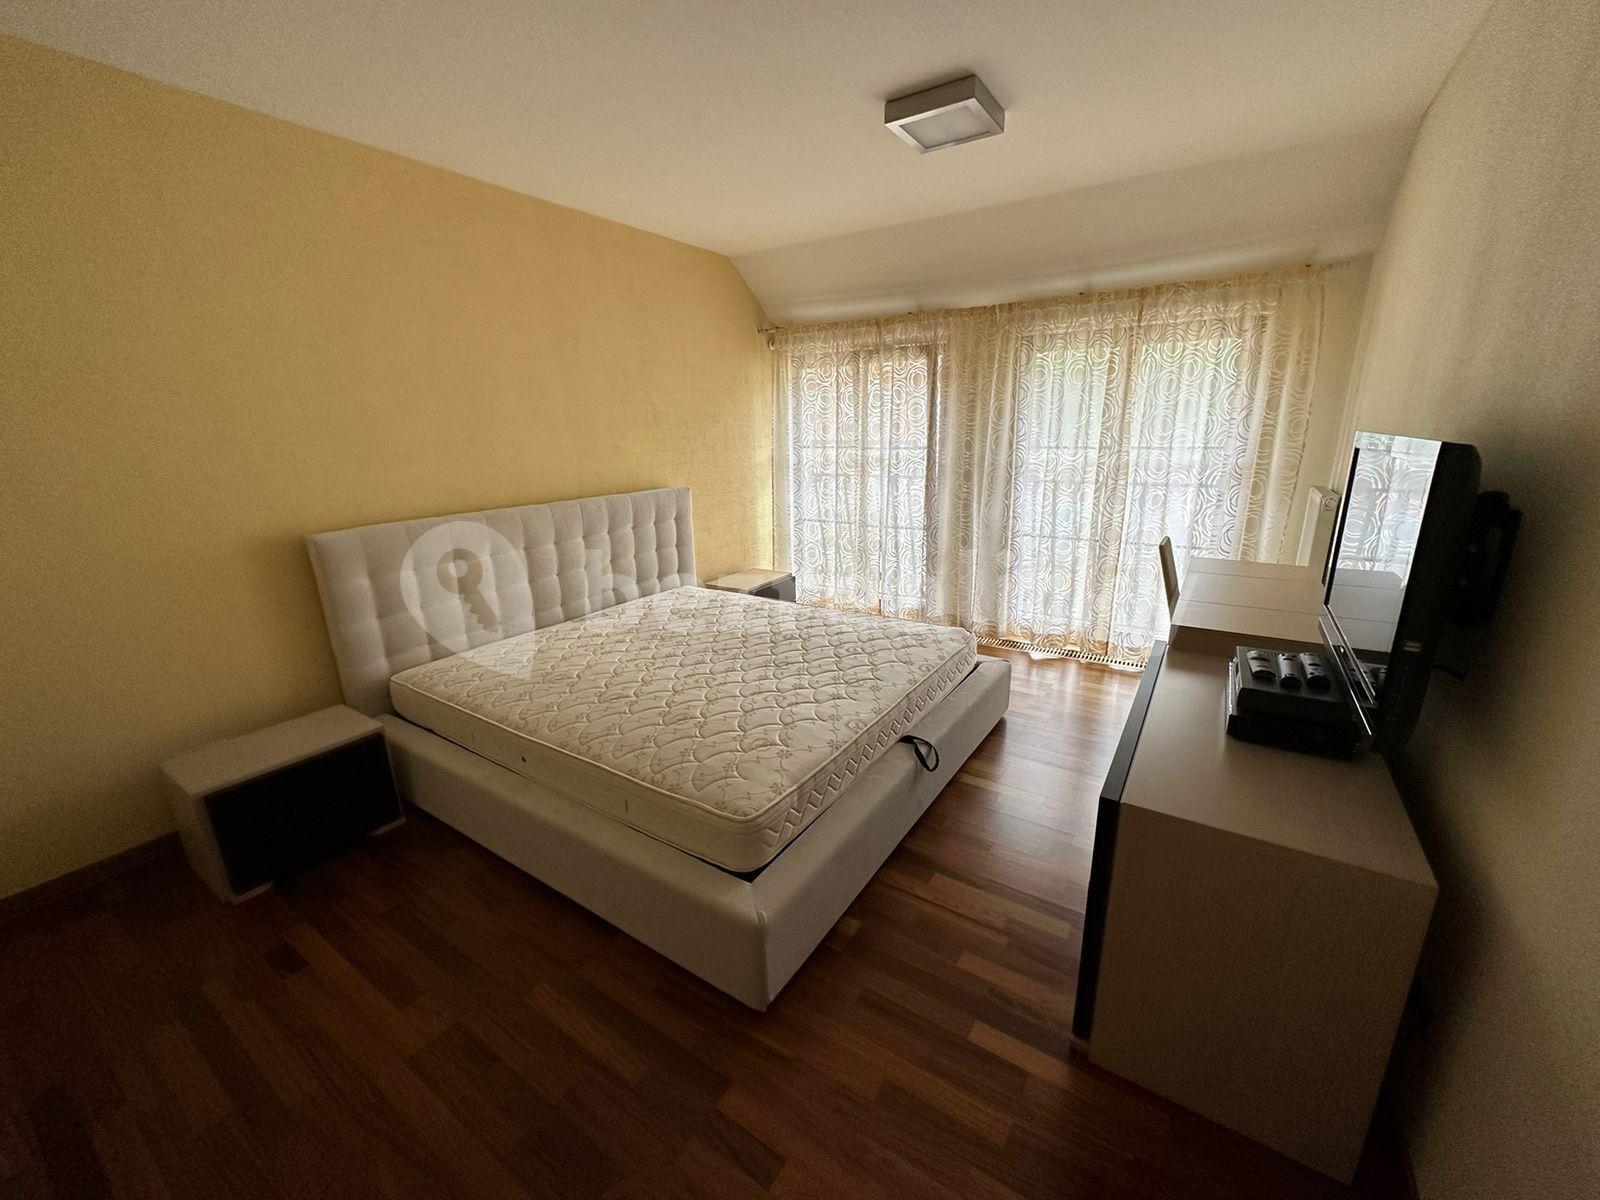 2 bedroom with open-plan kitchen flat for sale, 83 m², Zámecký vrch, Karlovy Vary, Karlovarský Region